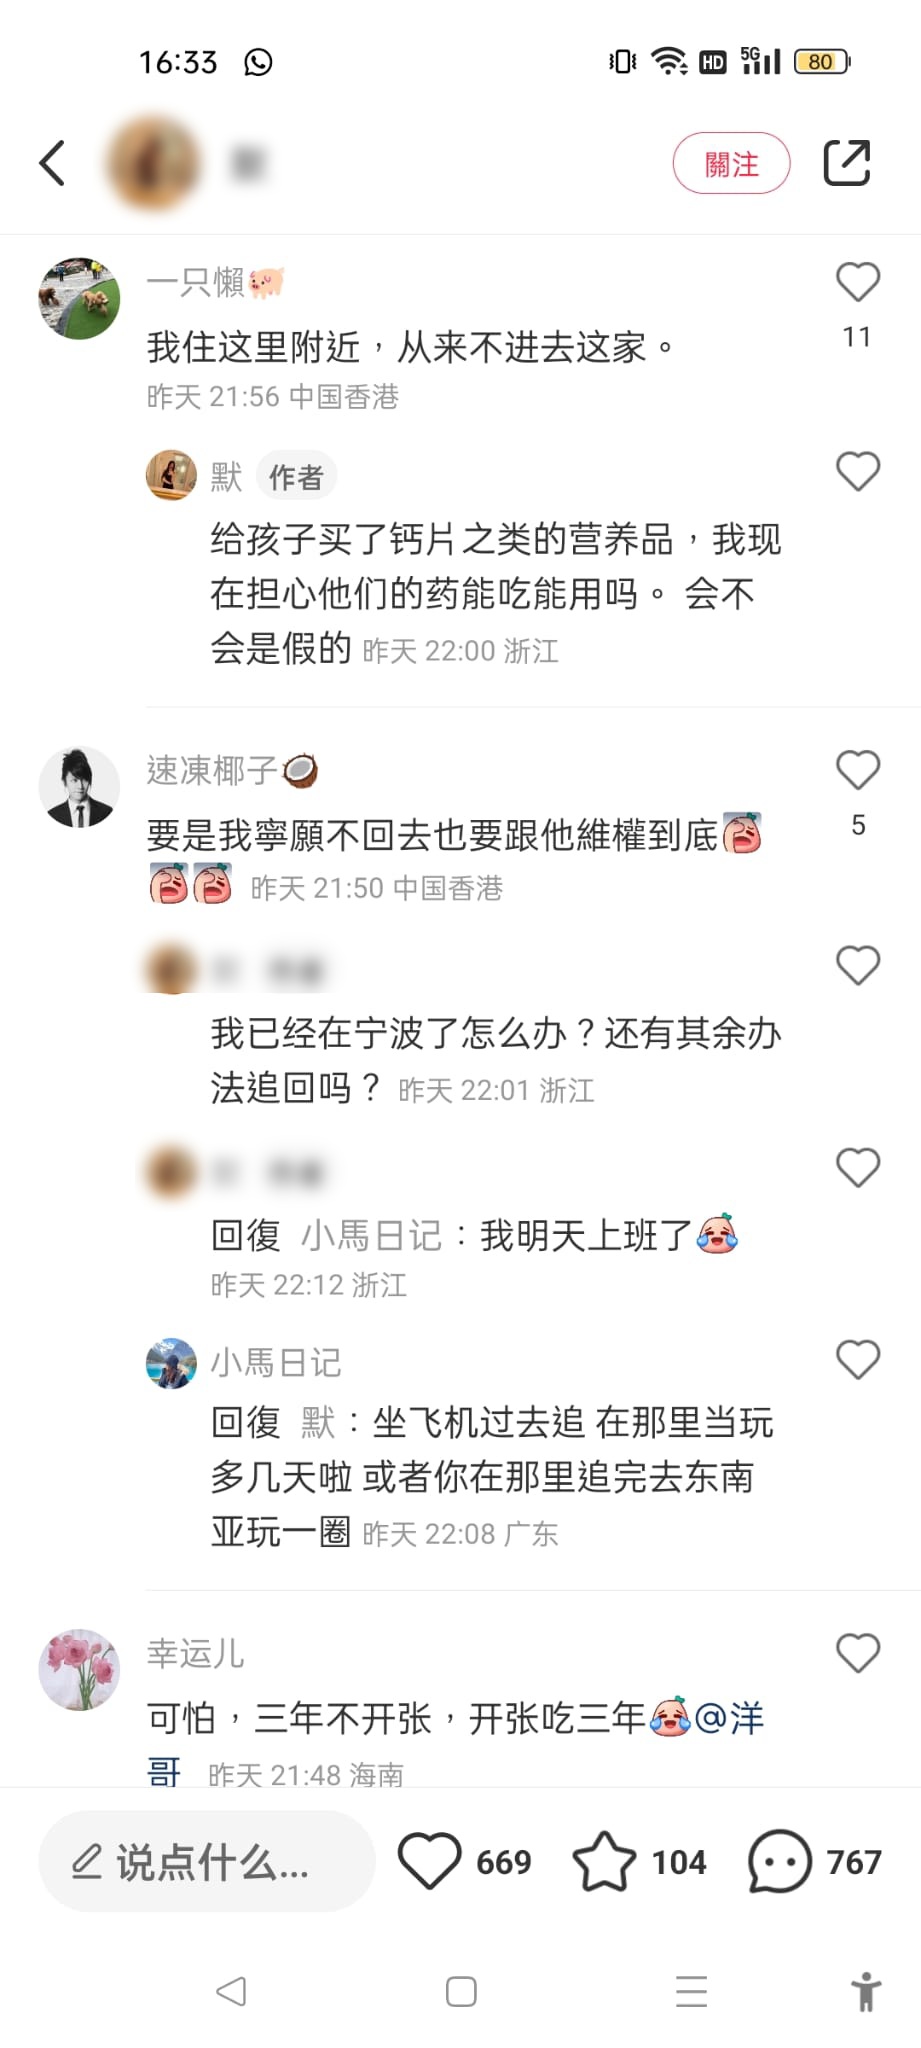 事主称已回上海宁波，请教网友有何跟进方法。(小红书图片)